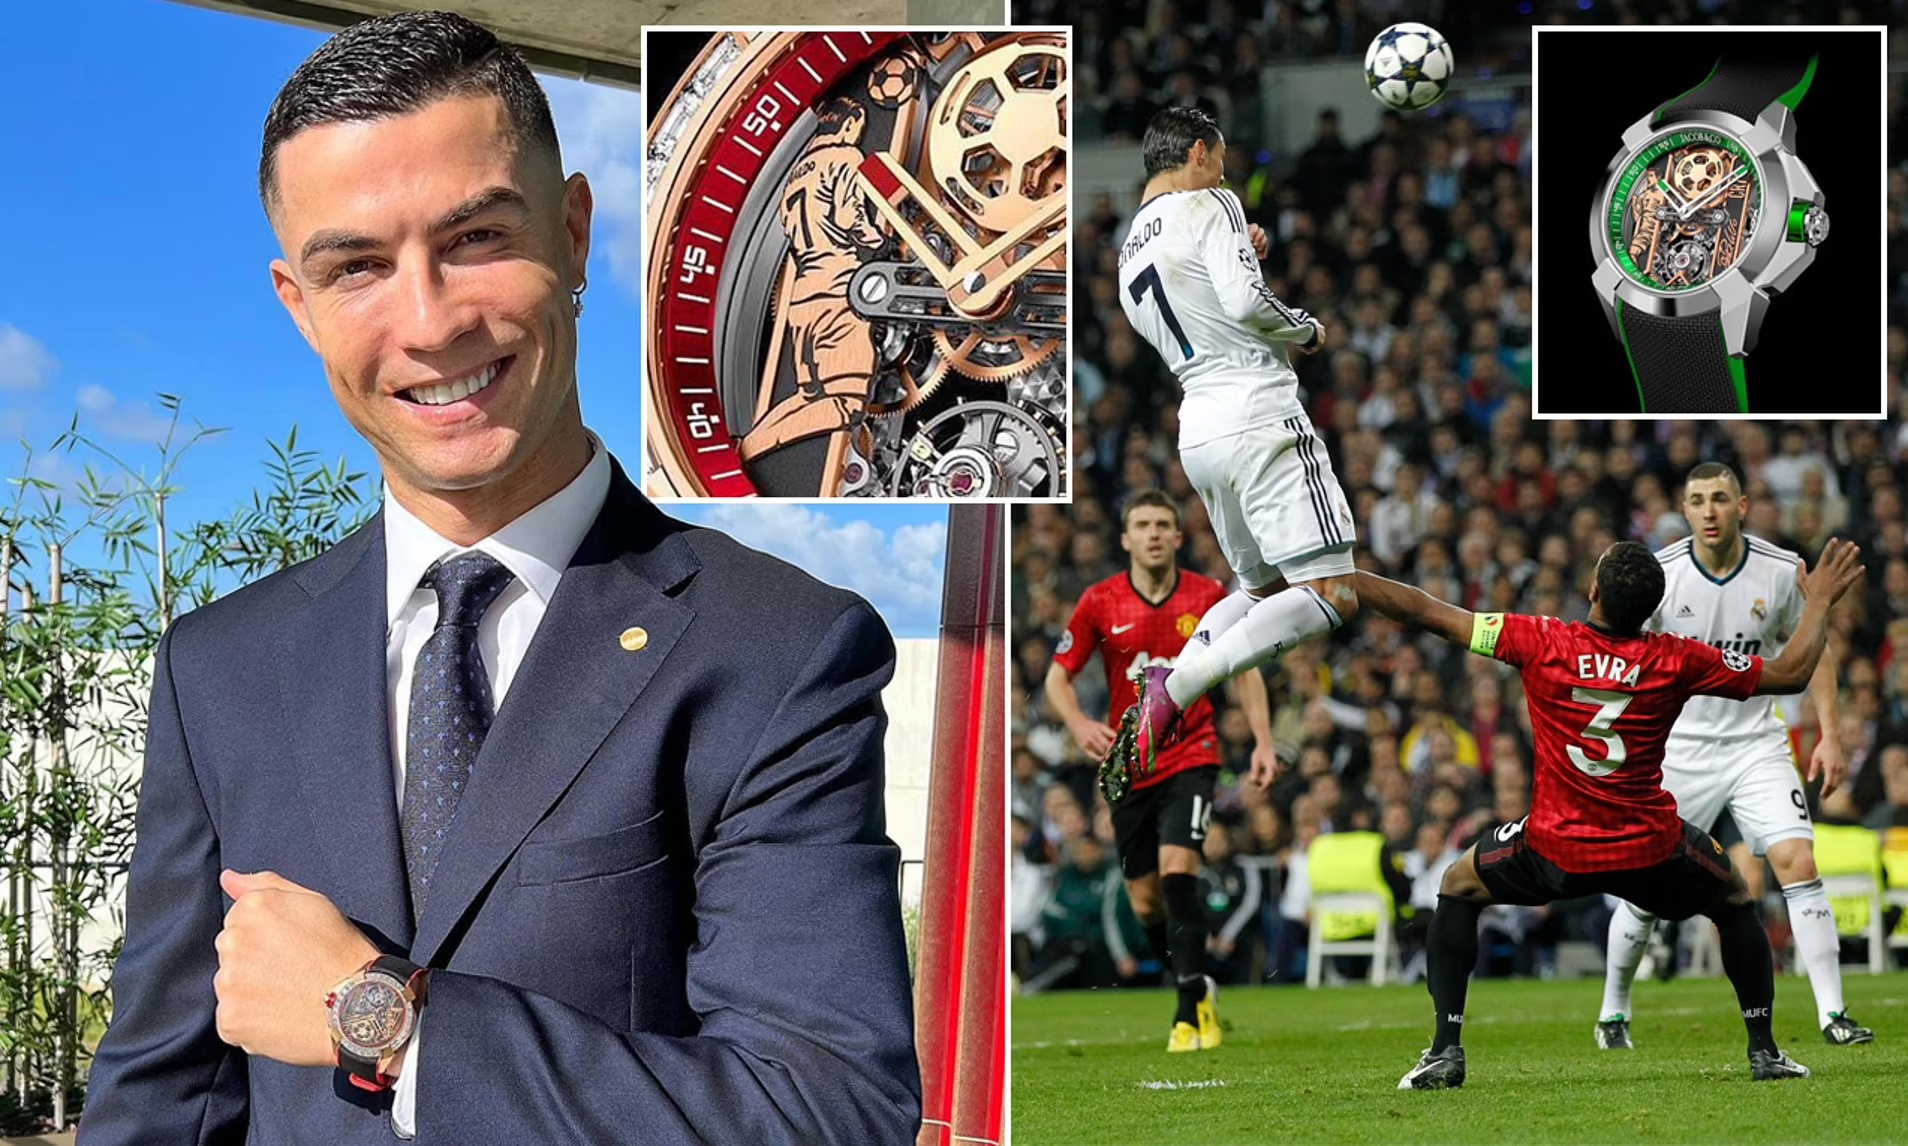 Đồng hồ Ronaldo: Bạn có tin rằng một chiếc đồng hồ cũng có thể “thể hiện” được tình yêu của bạn dành cho Ronaldo? Hãy tìm kiếm những chiếc đồng hồ được thiết kế theo phong cách của cầu thủ này để cảm nhận được sự đam mê và tài năng của anh ta trong từng phút giây. Bất cứ lúc nào nhìn vào đồng hồ, bạn sẽ lại nhớ đến siêu sao bóng đá đầy cá tính này.